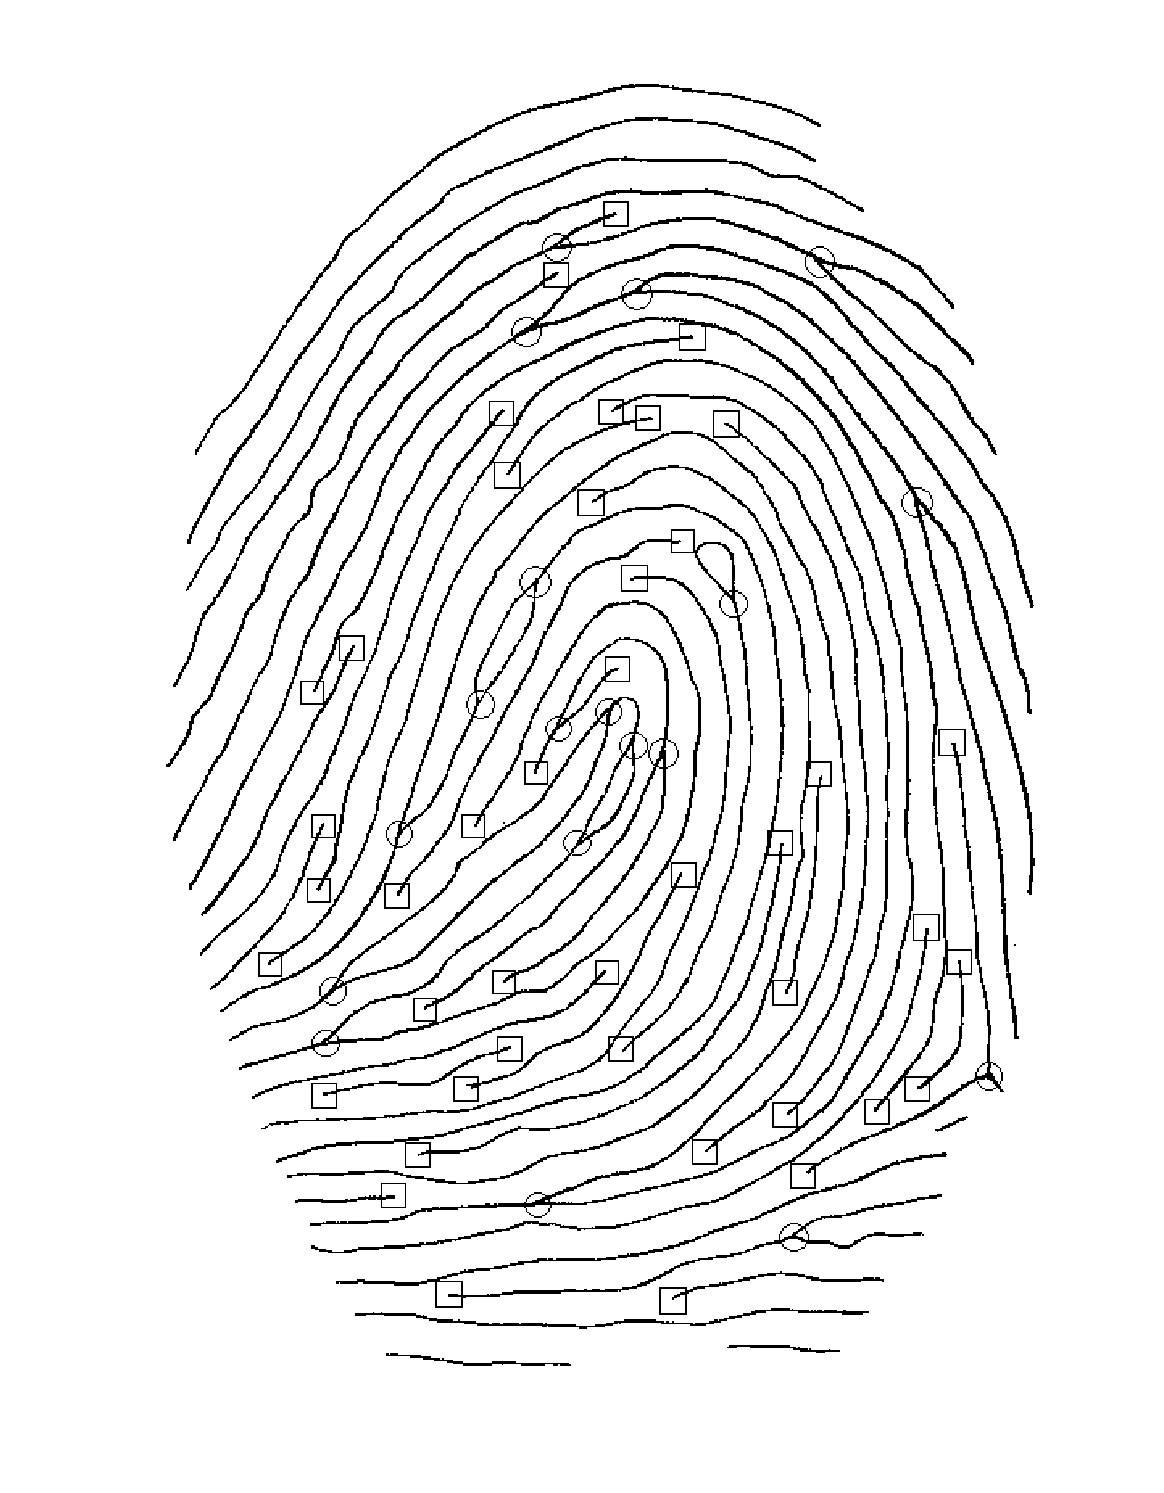 Fingerprint enrolment algorithm